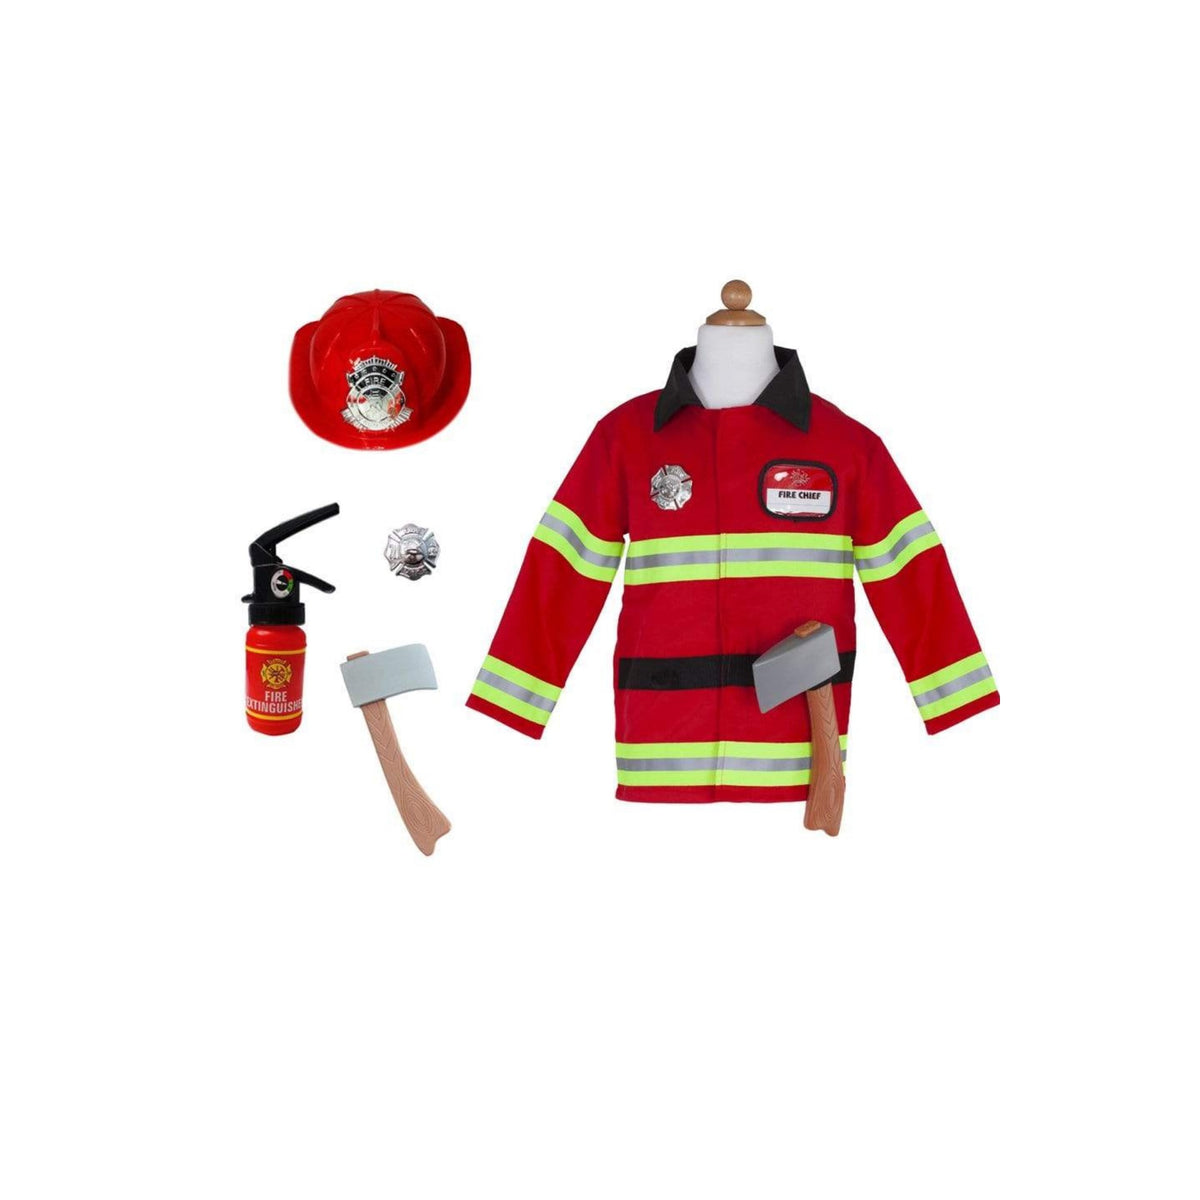 Schlage Alarm! In diesem kompletten Feuerwehr-Outfit kannst du wilde Brände bekämpfen. Mit diesem kompletten 5-teiligen Verkleidungs- und Spielset siehst du richtig aus.